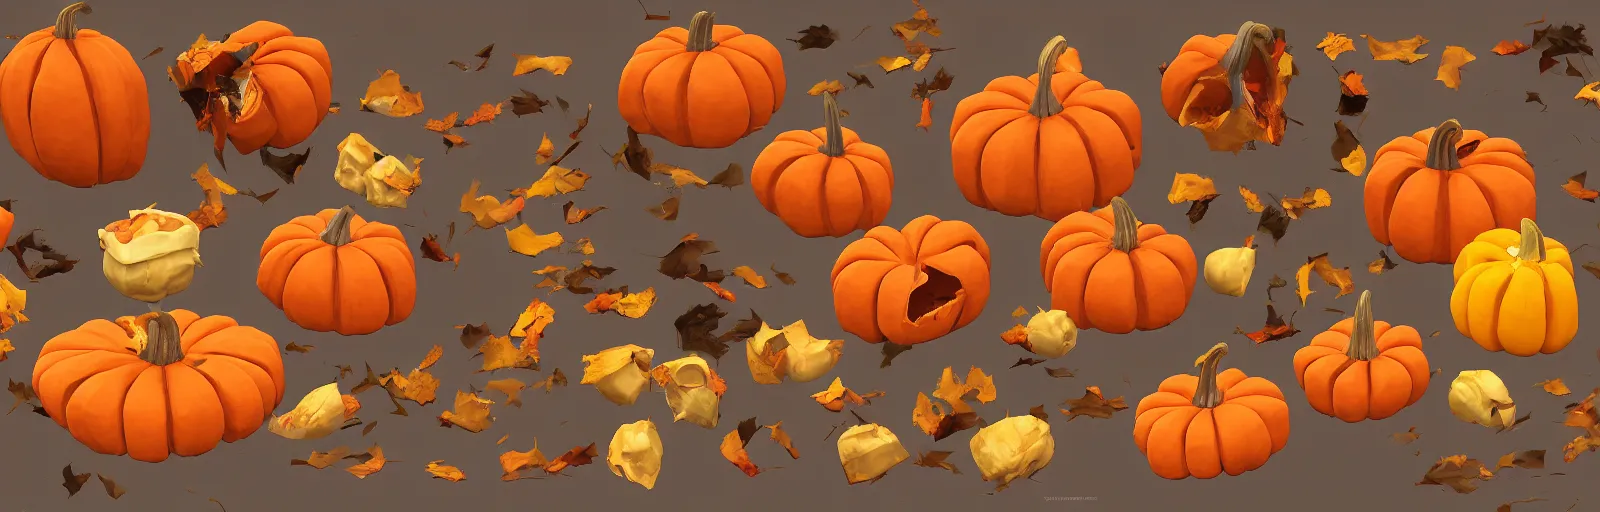 Image similar to prop smashed pumpkins items 2d pack trending on artstation